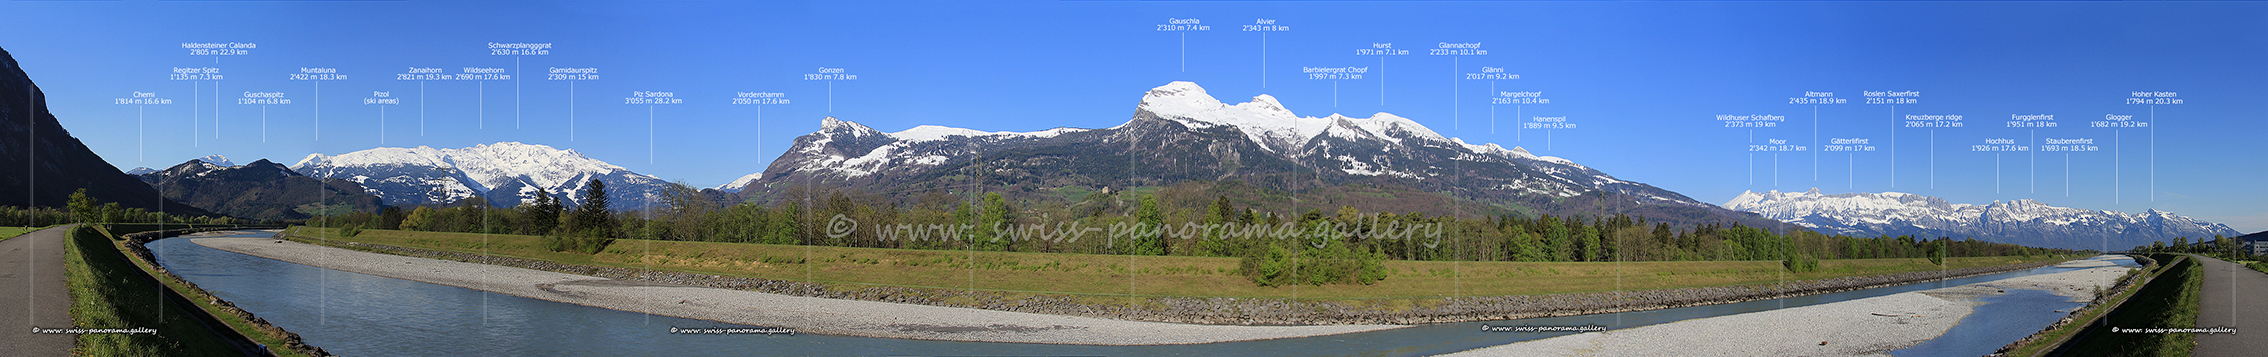 Switzerland panorama Rheintal